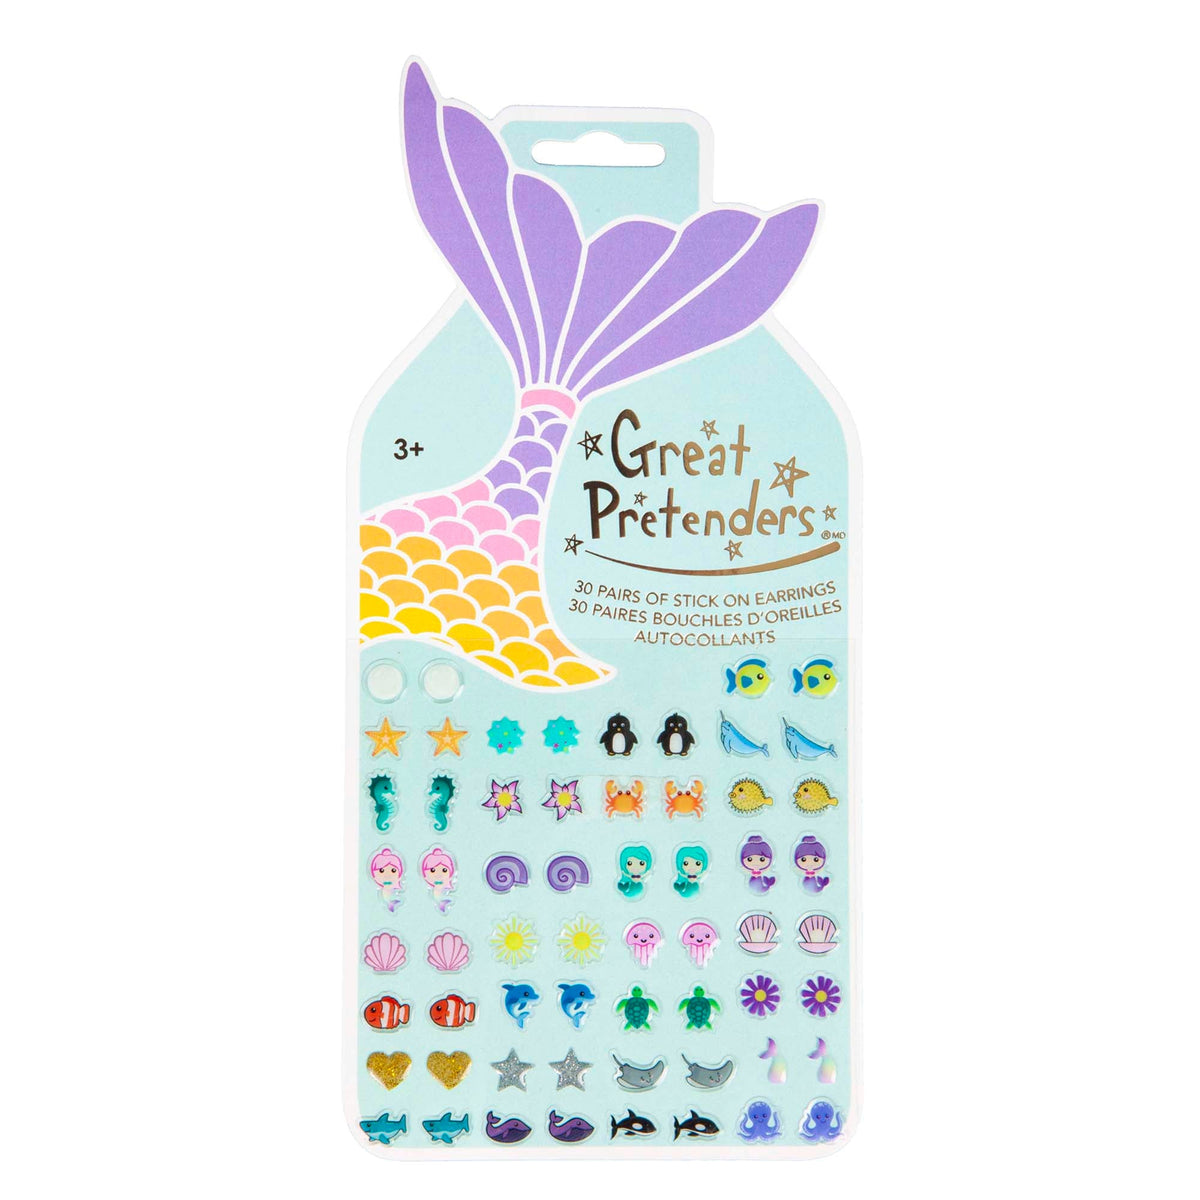 Great Pretenders Kids Birthday Mermaid Earring Stickers, 30 Count 771877875045